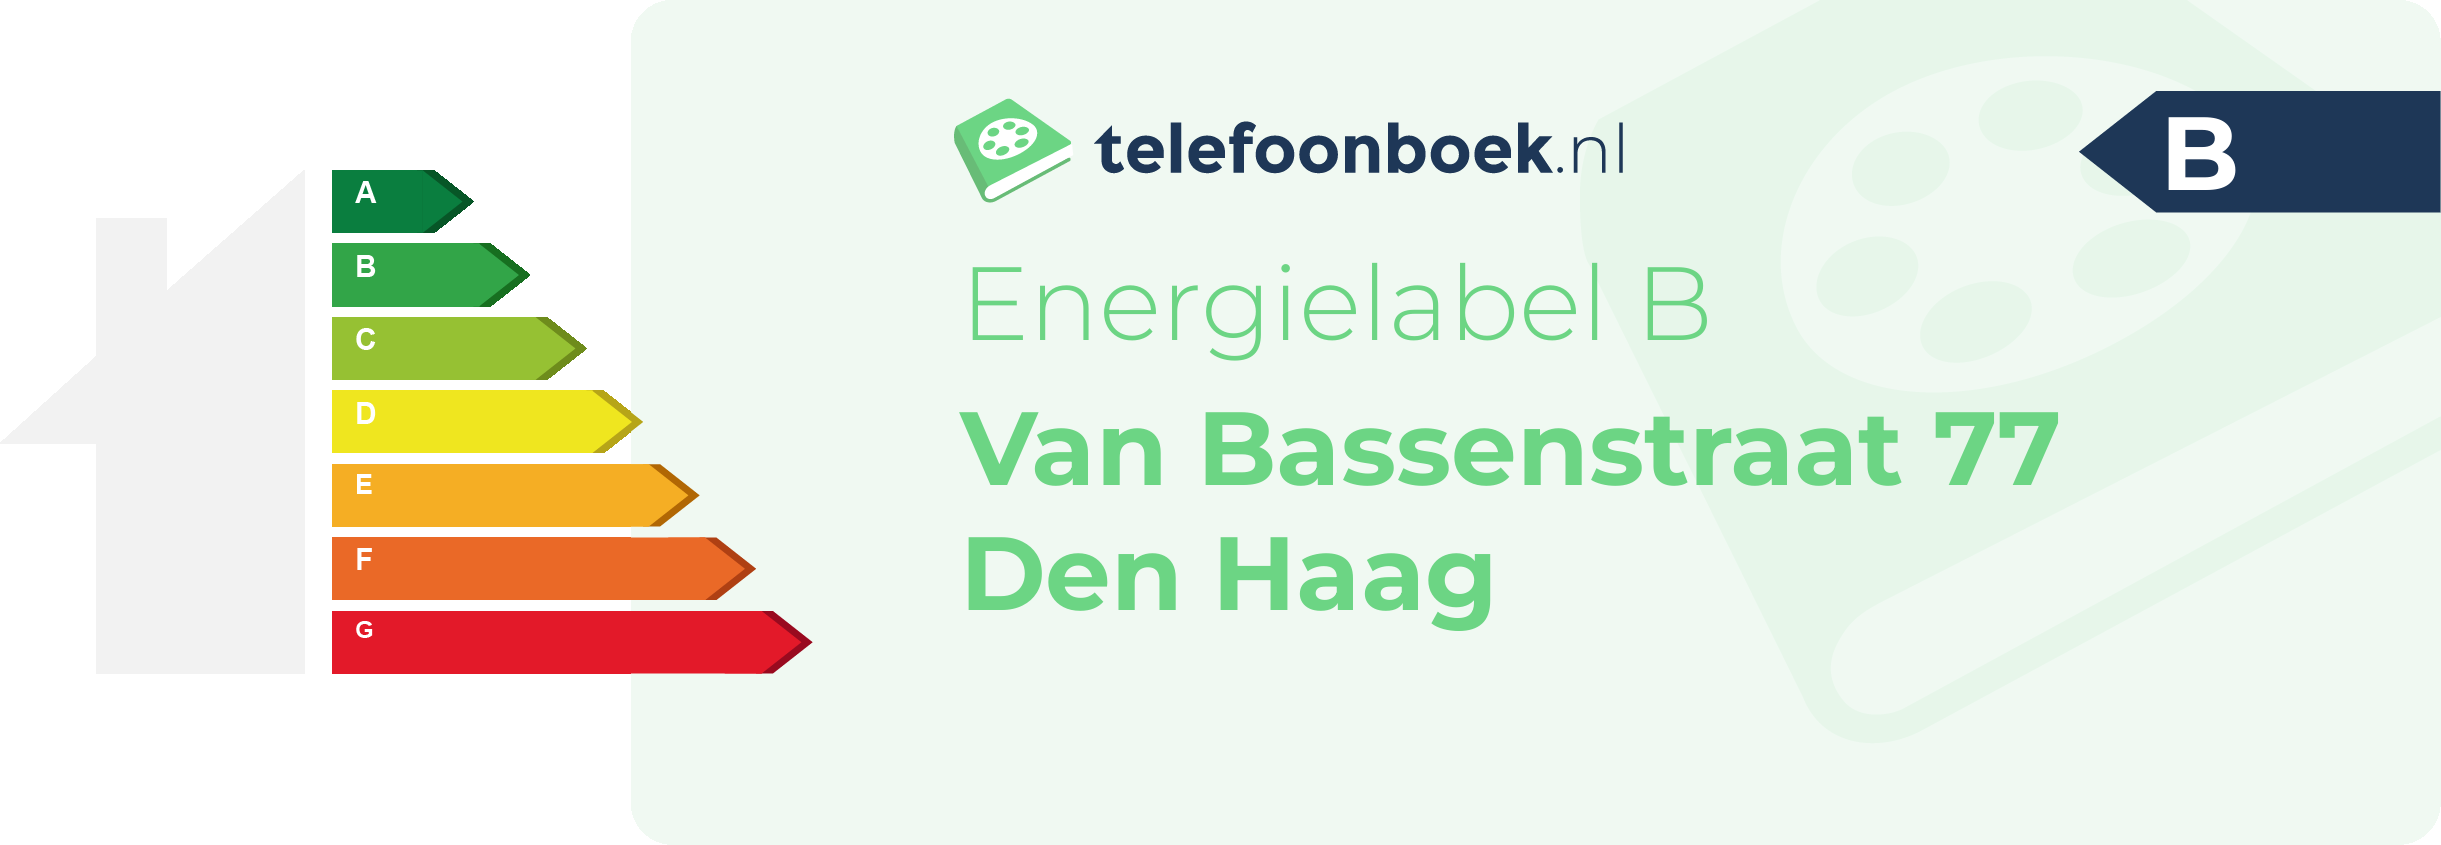 Energielabel Van Bassenstraat 77 Den Haag